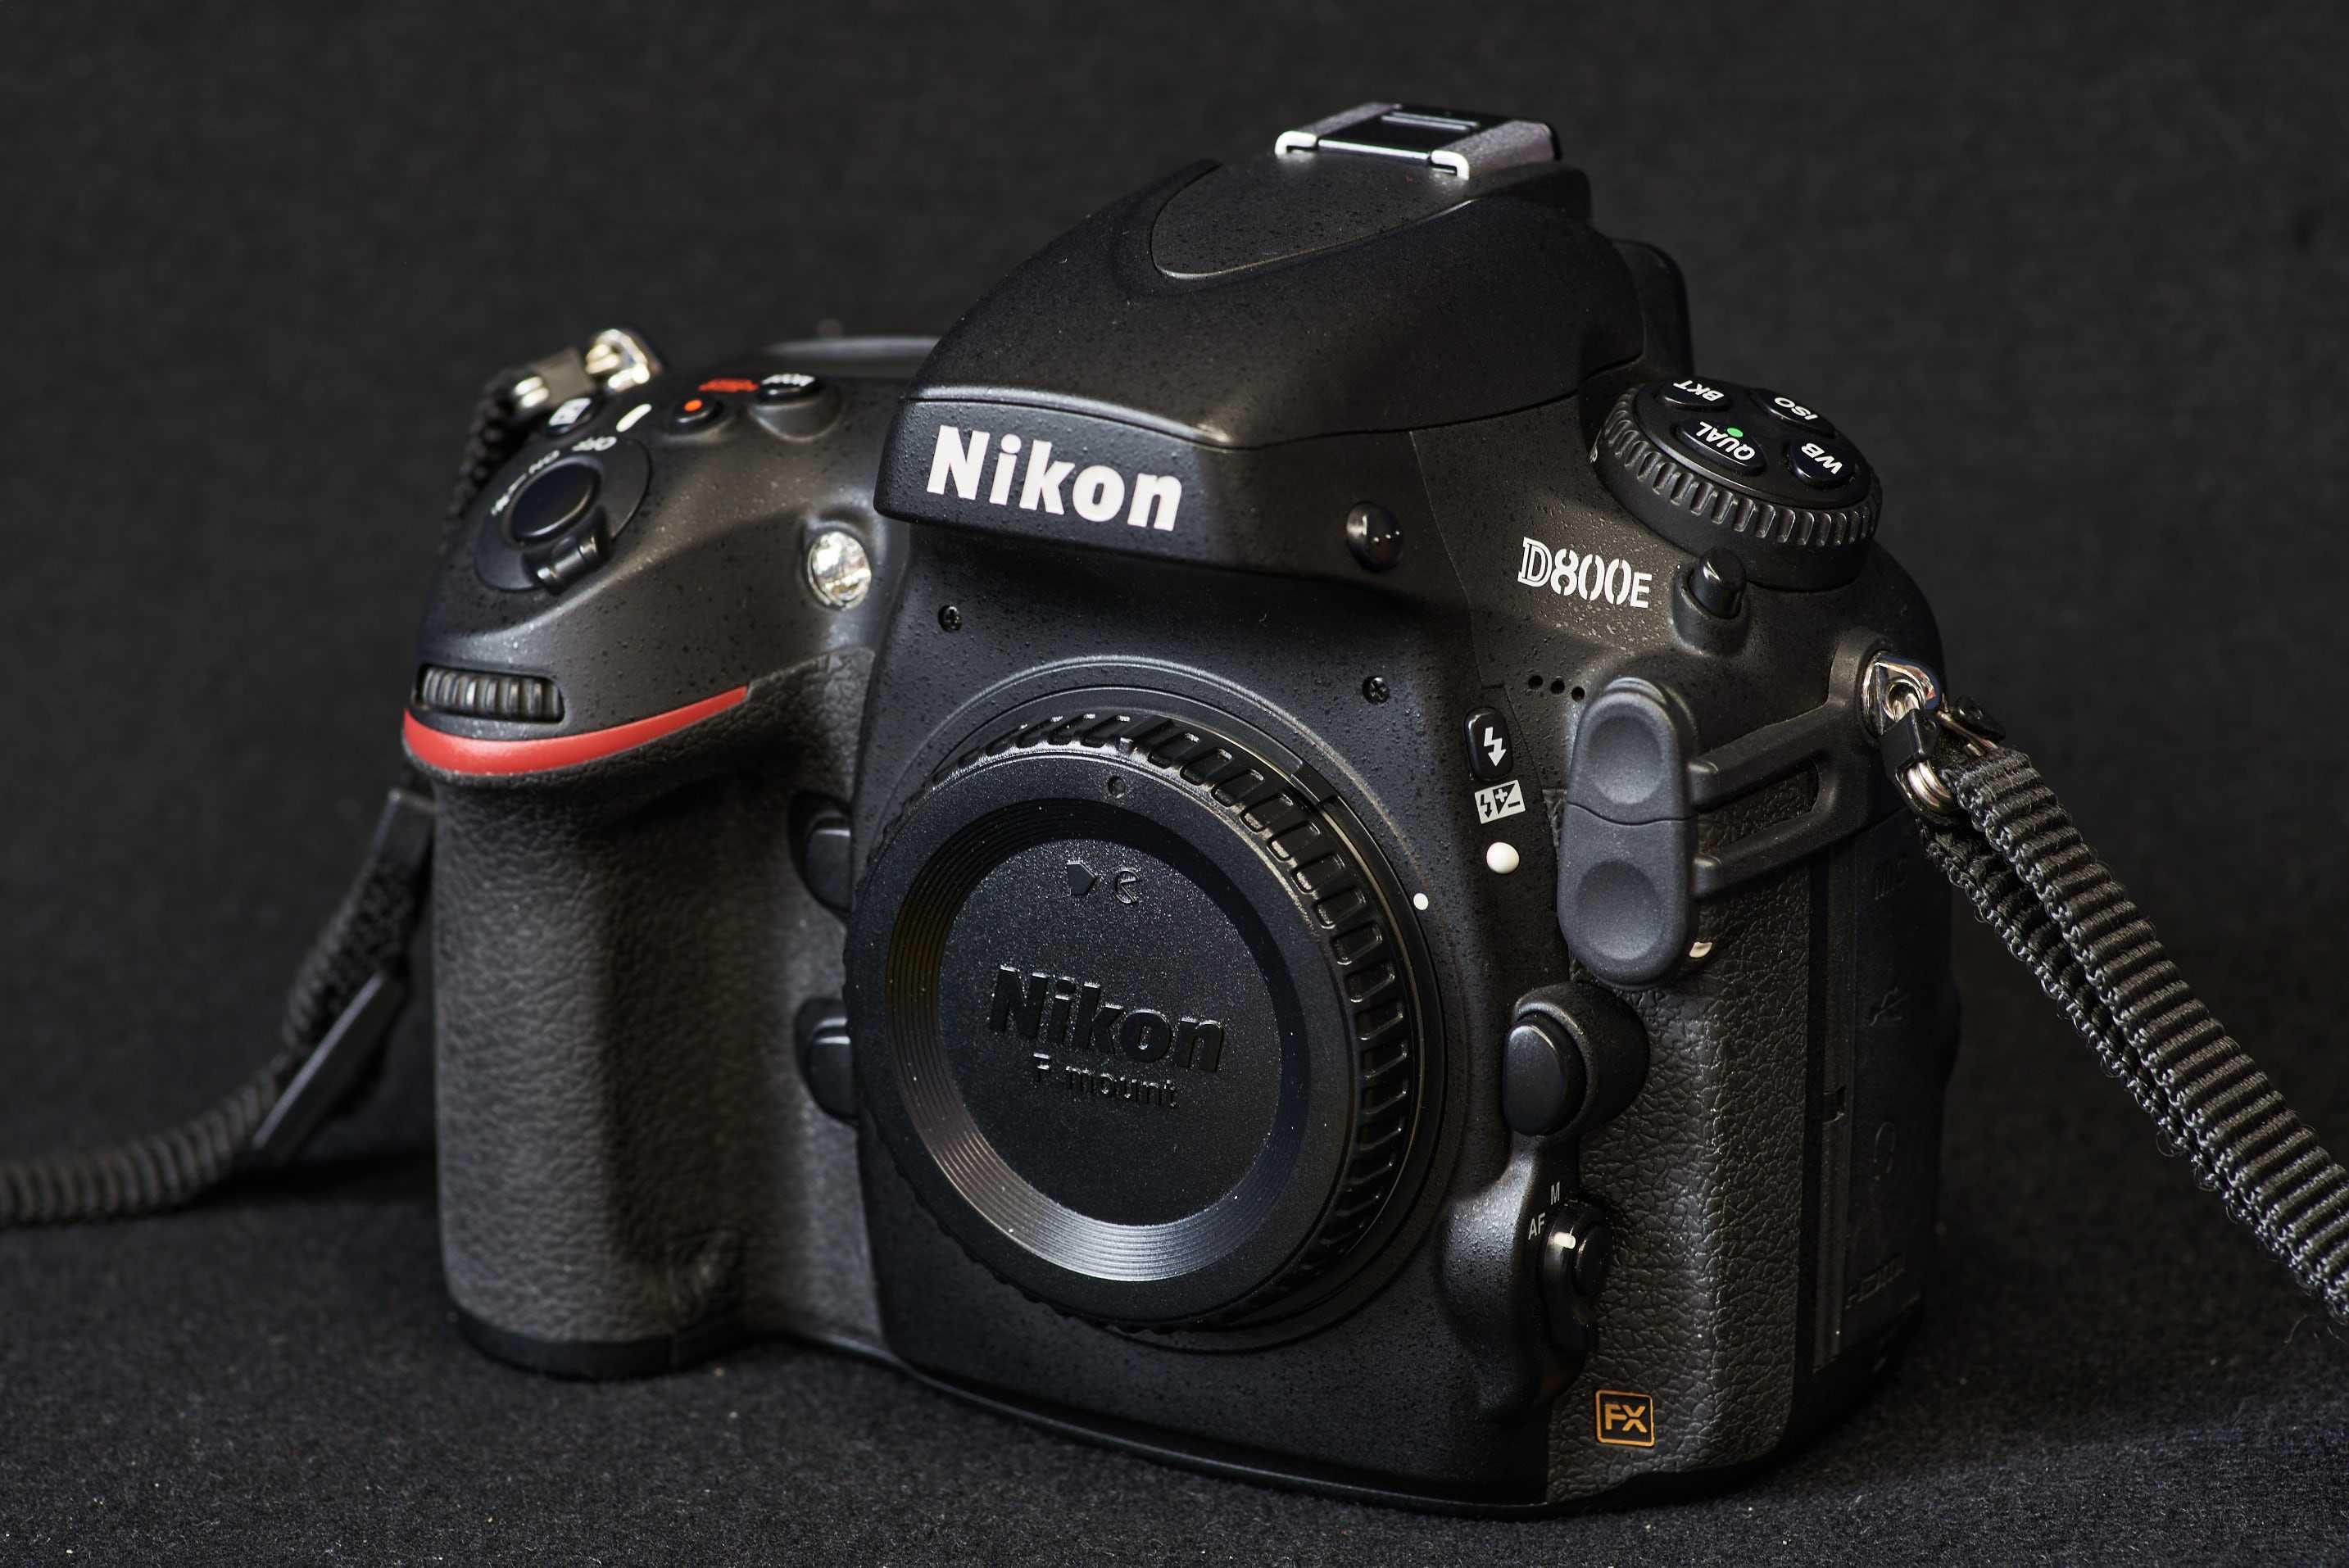 Nikon D800e body